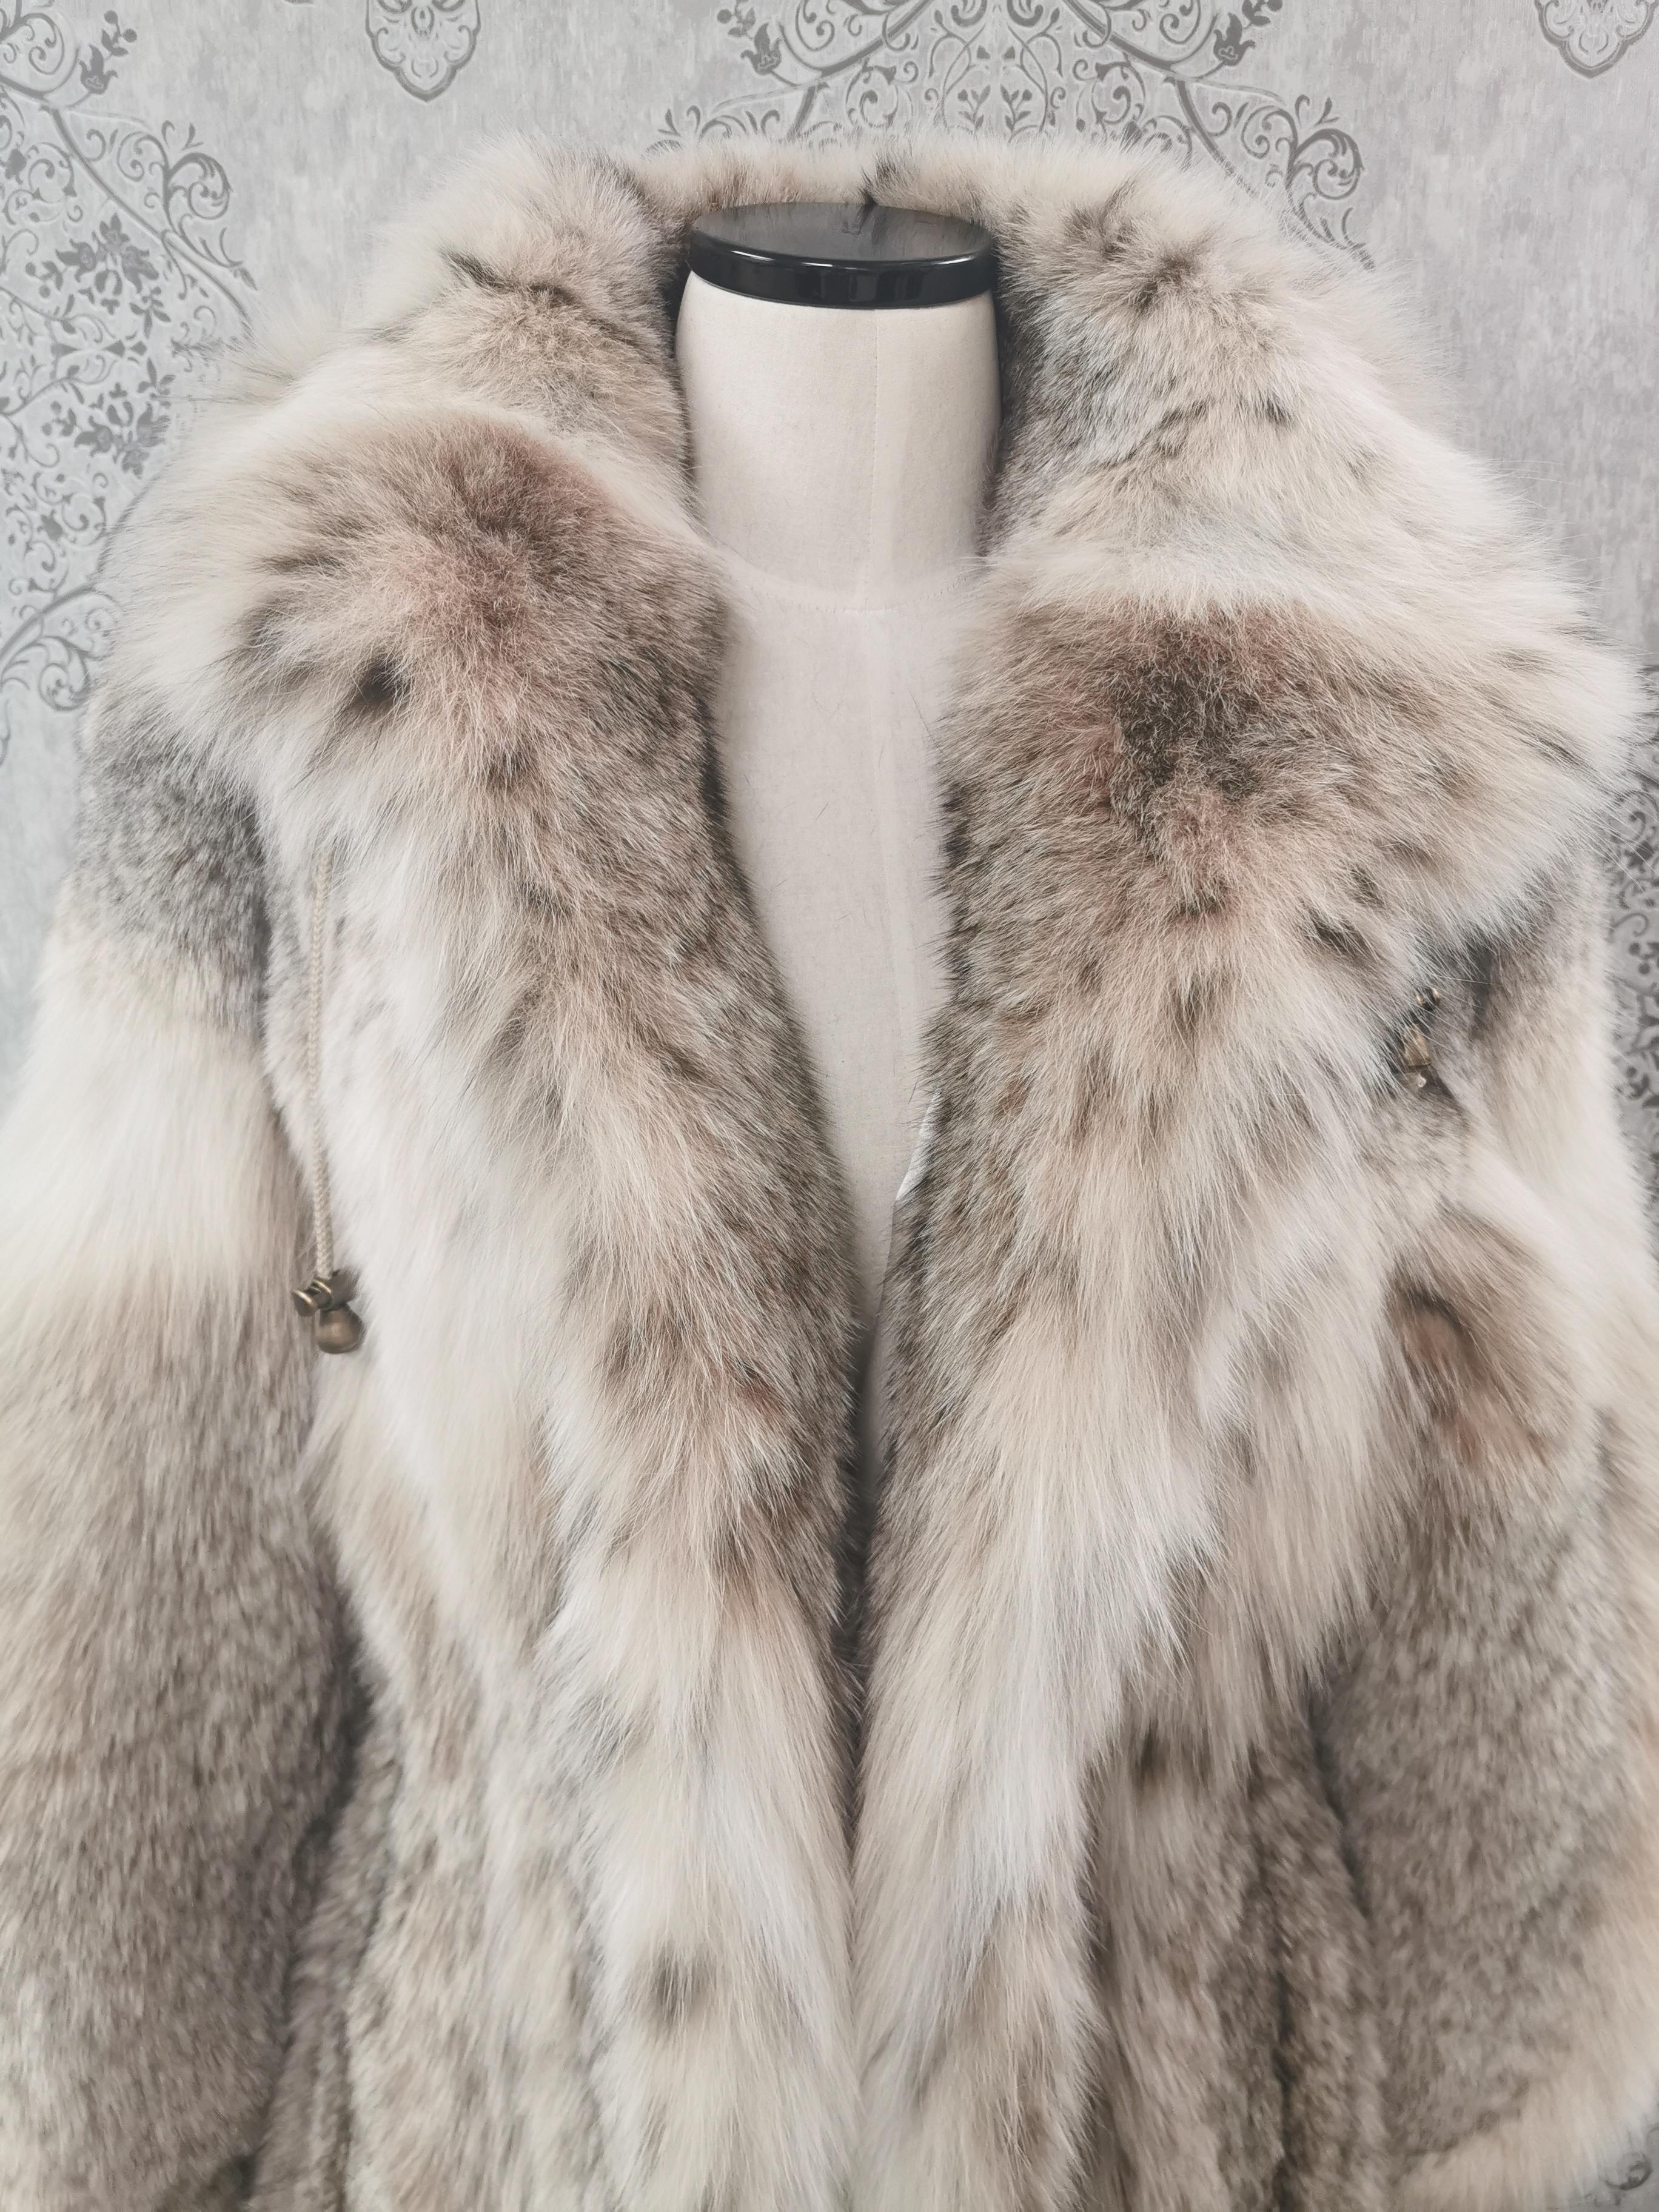 brooke shields fur coat